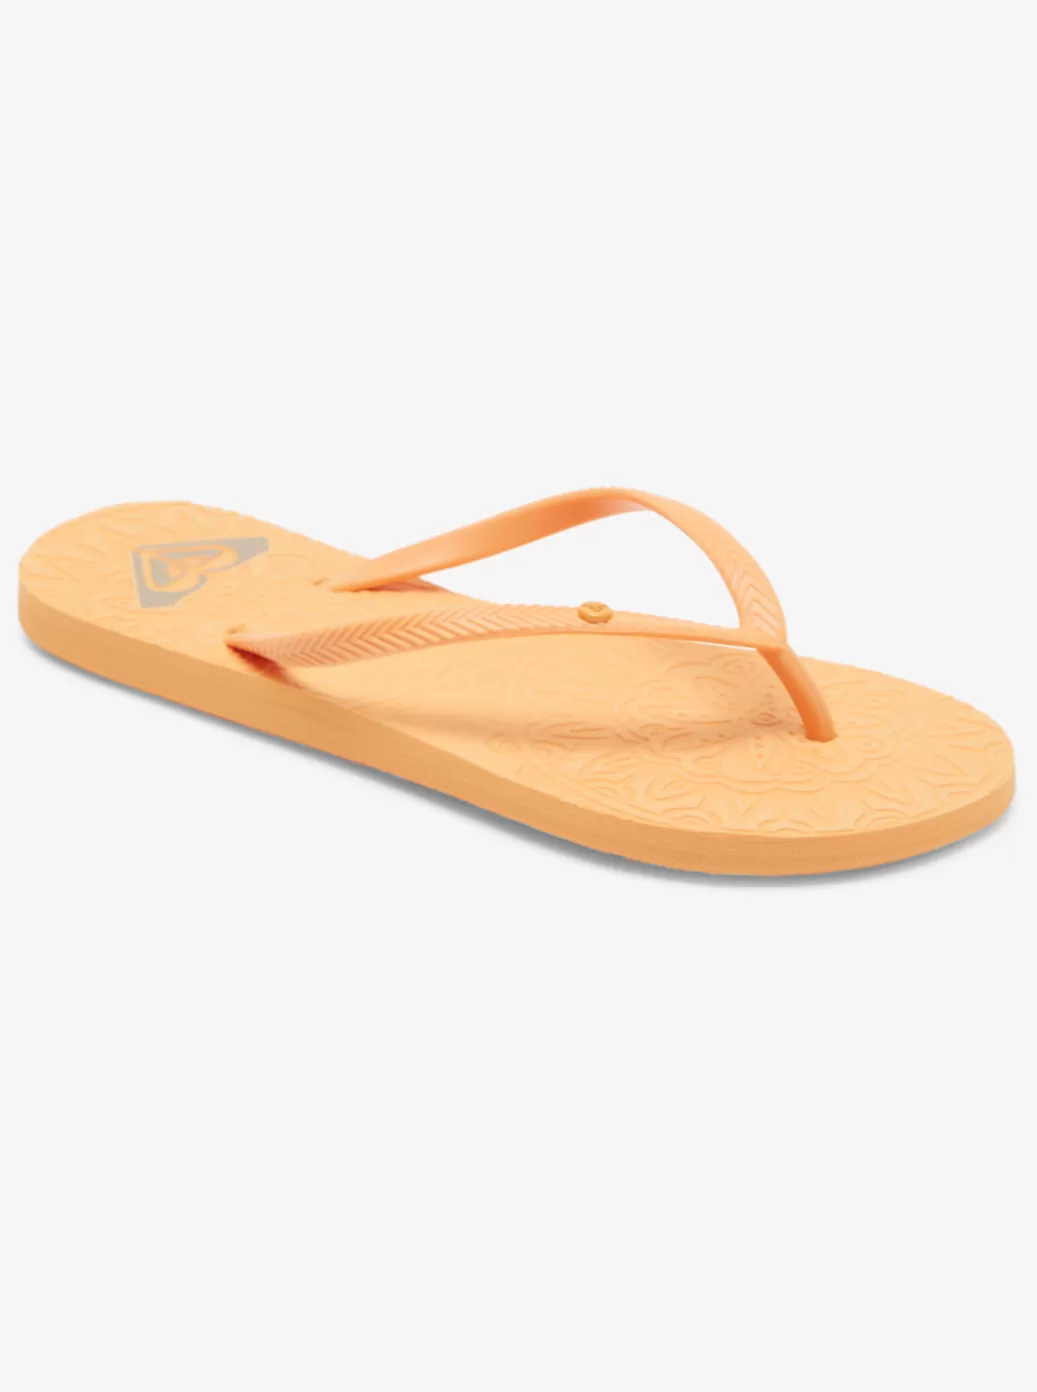 Flip Flops | WOMEN ROXY Antilles Sandals Orange Peel